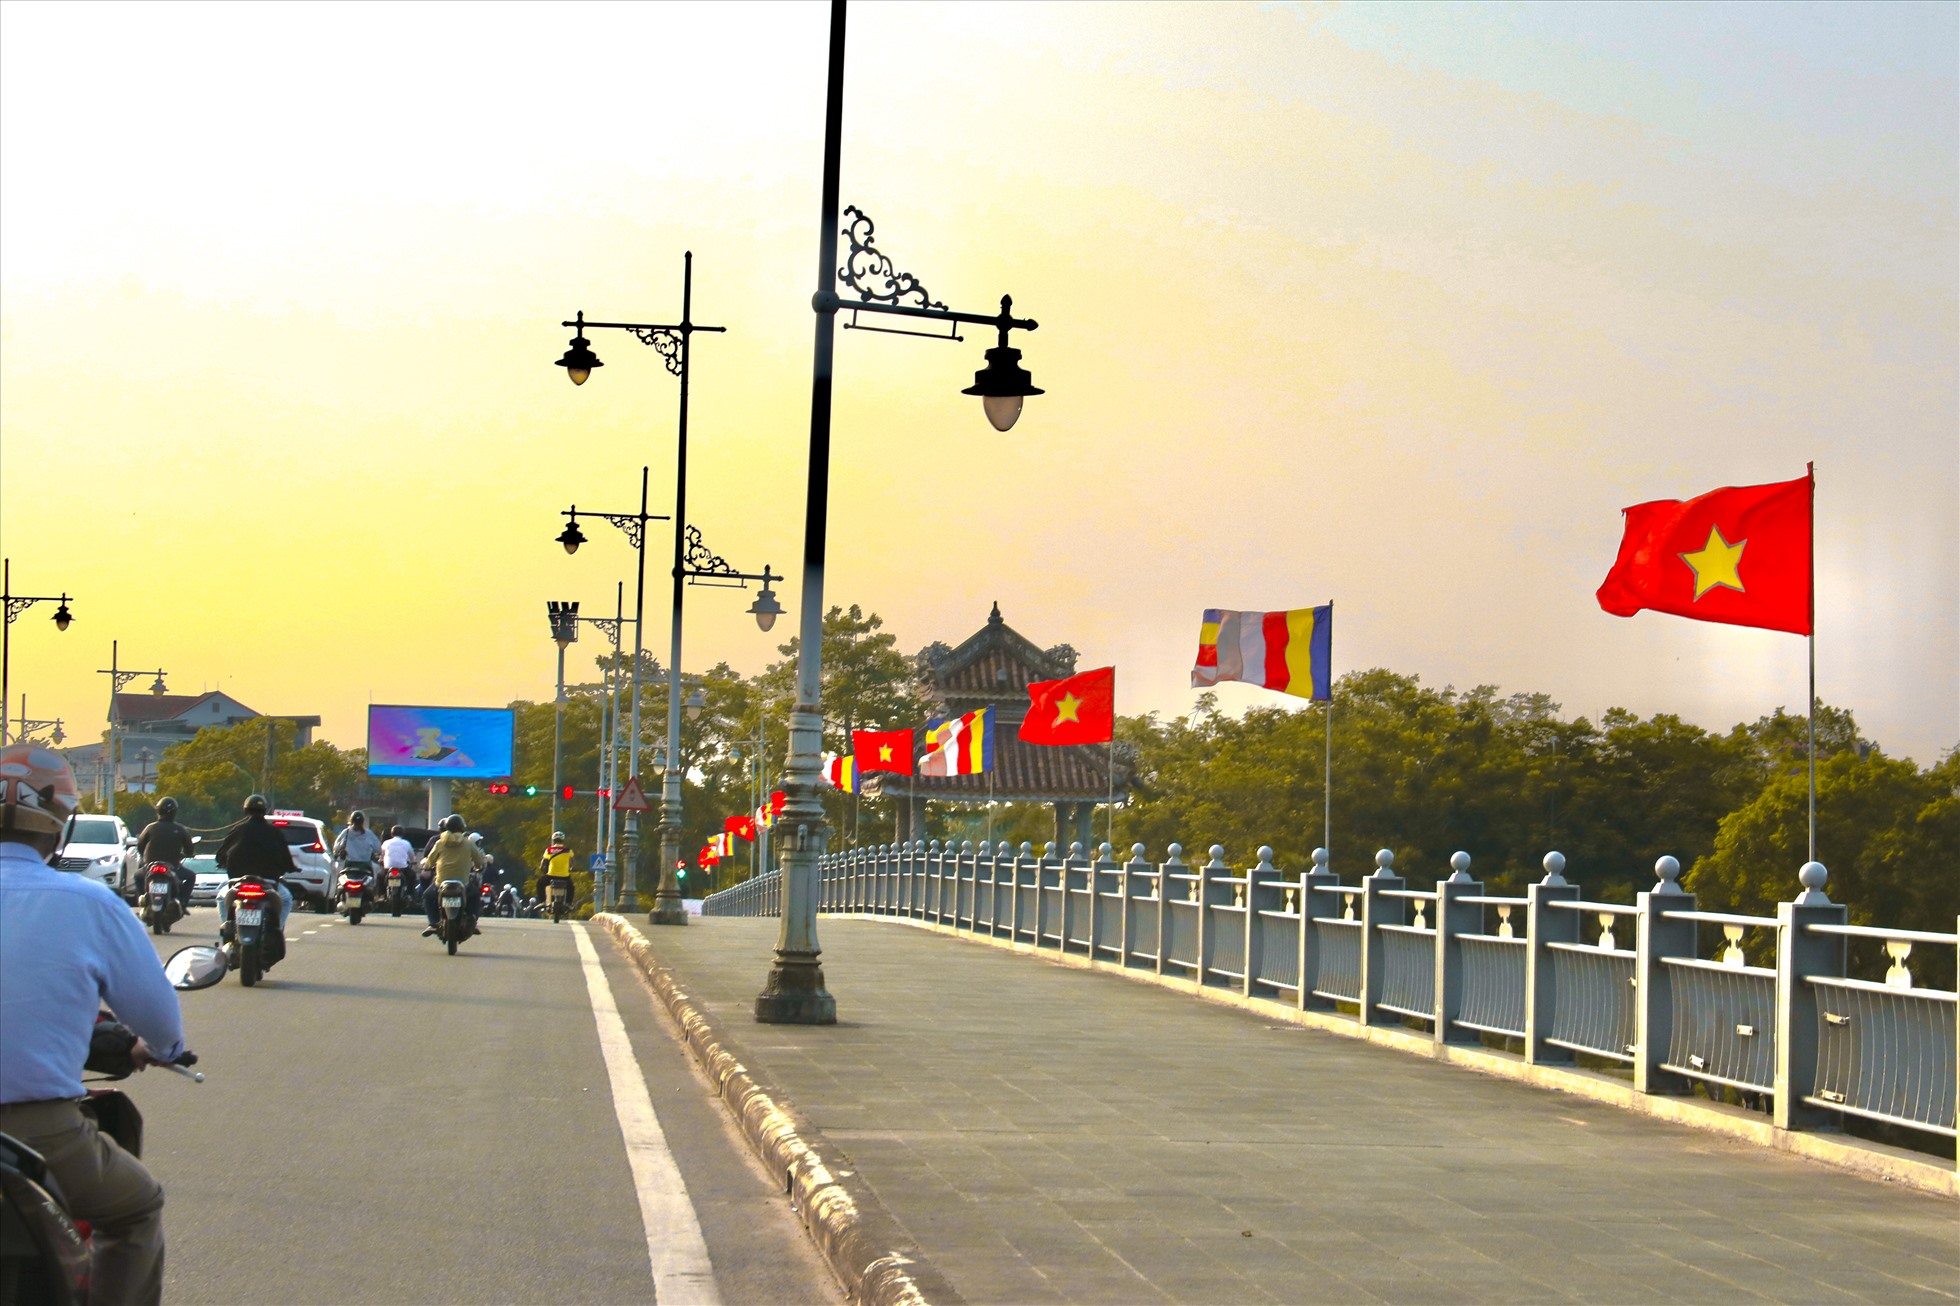 3 cây cầu lớn ở trung tâm TP. Huế lần lượt là cầu Trường Tiền, cầu Phú Xuân, cầu Dã Viên đều nhuộm màu xinh tươi, khiến du khách thích thú.